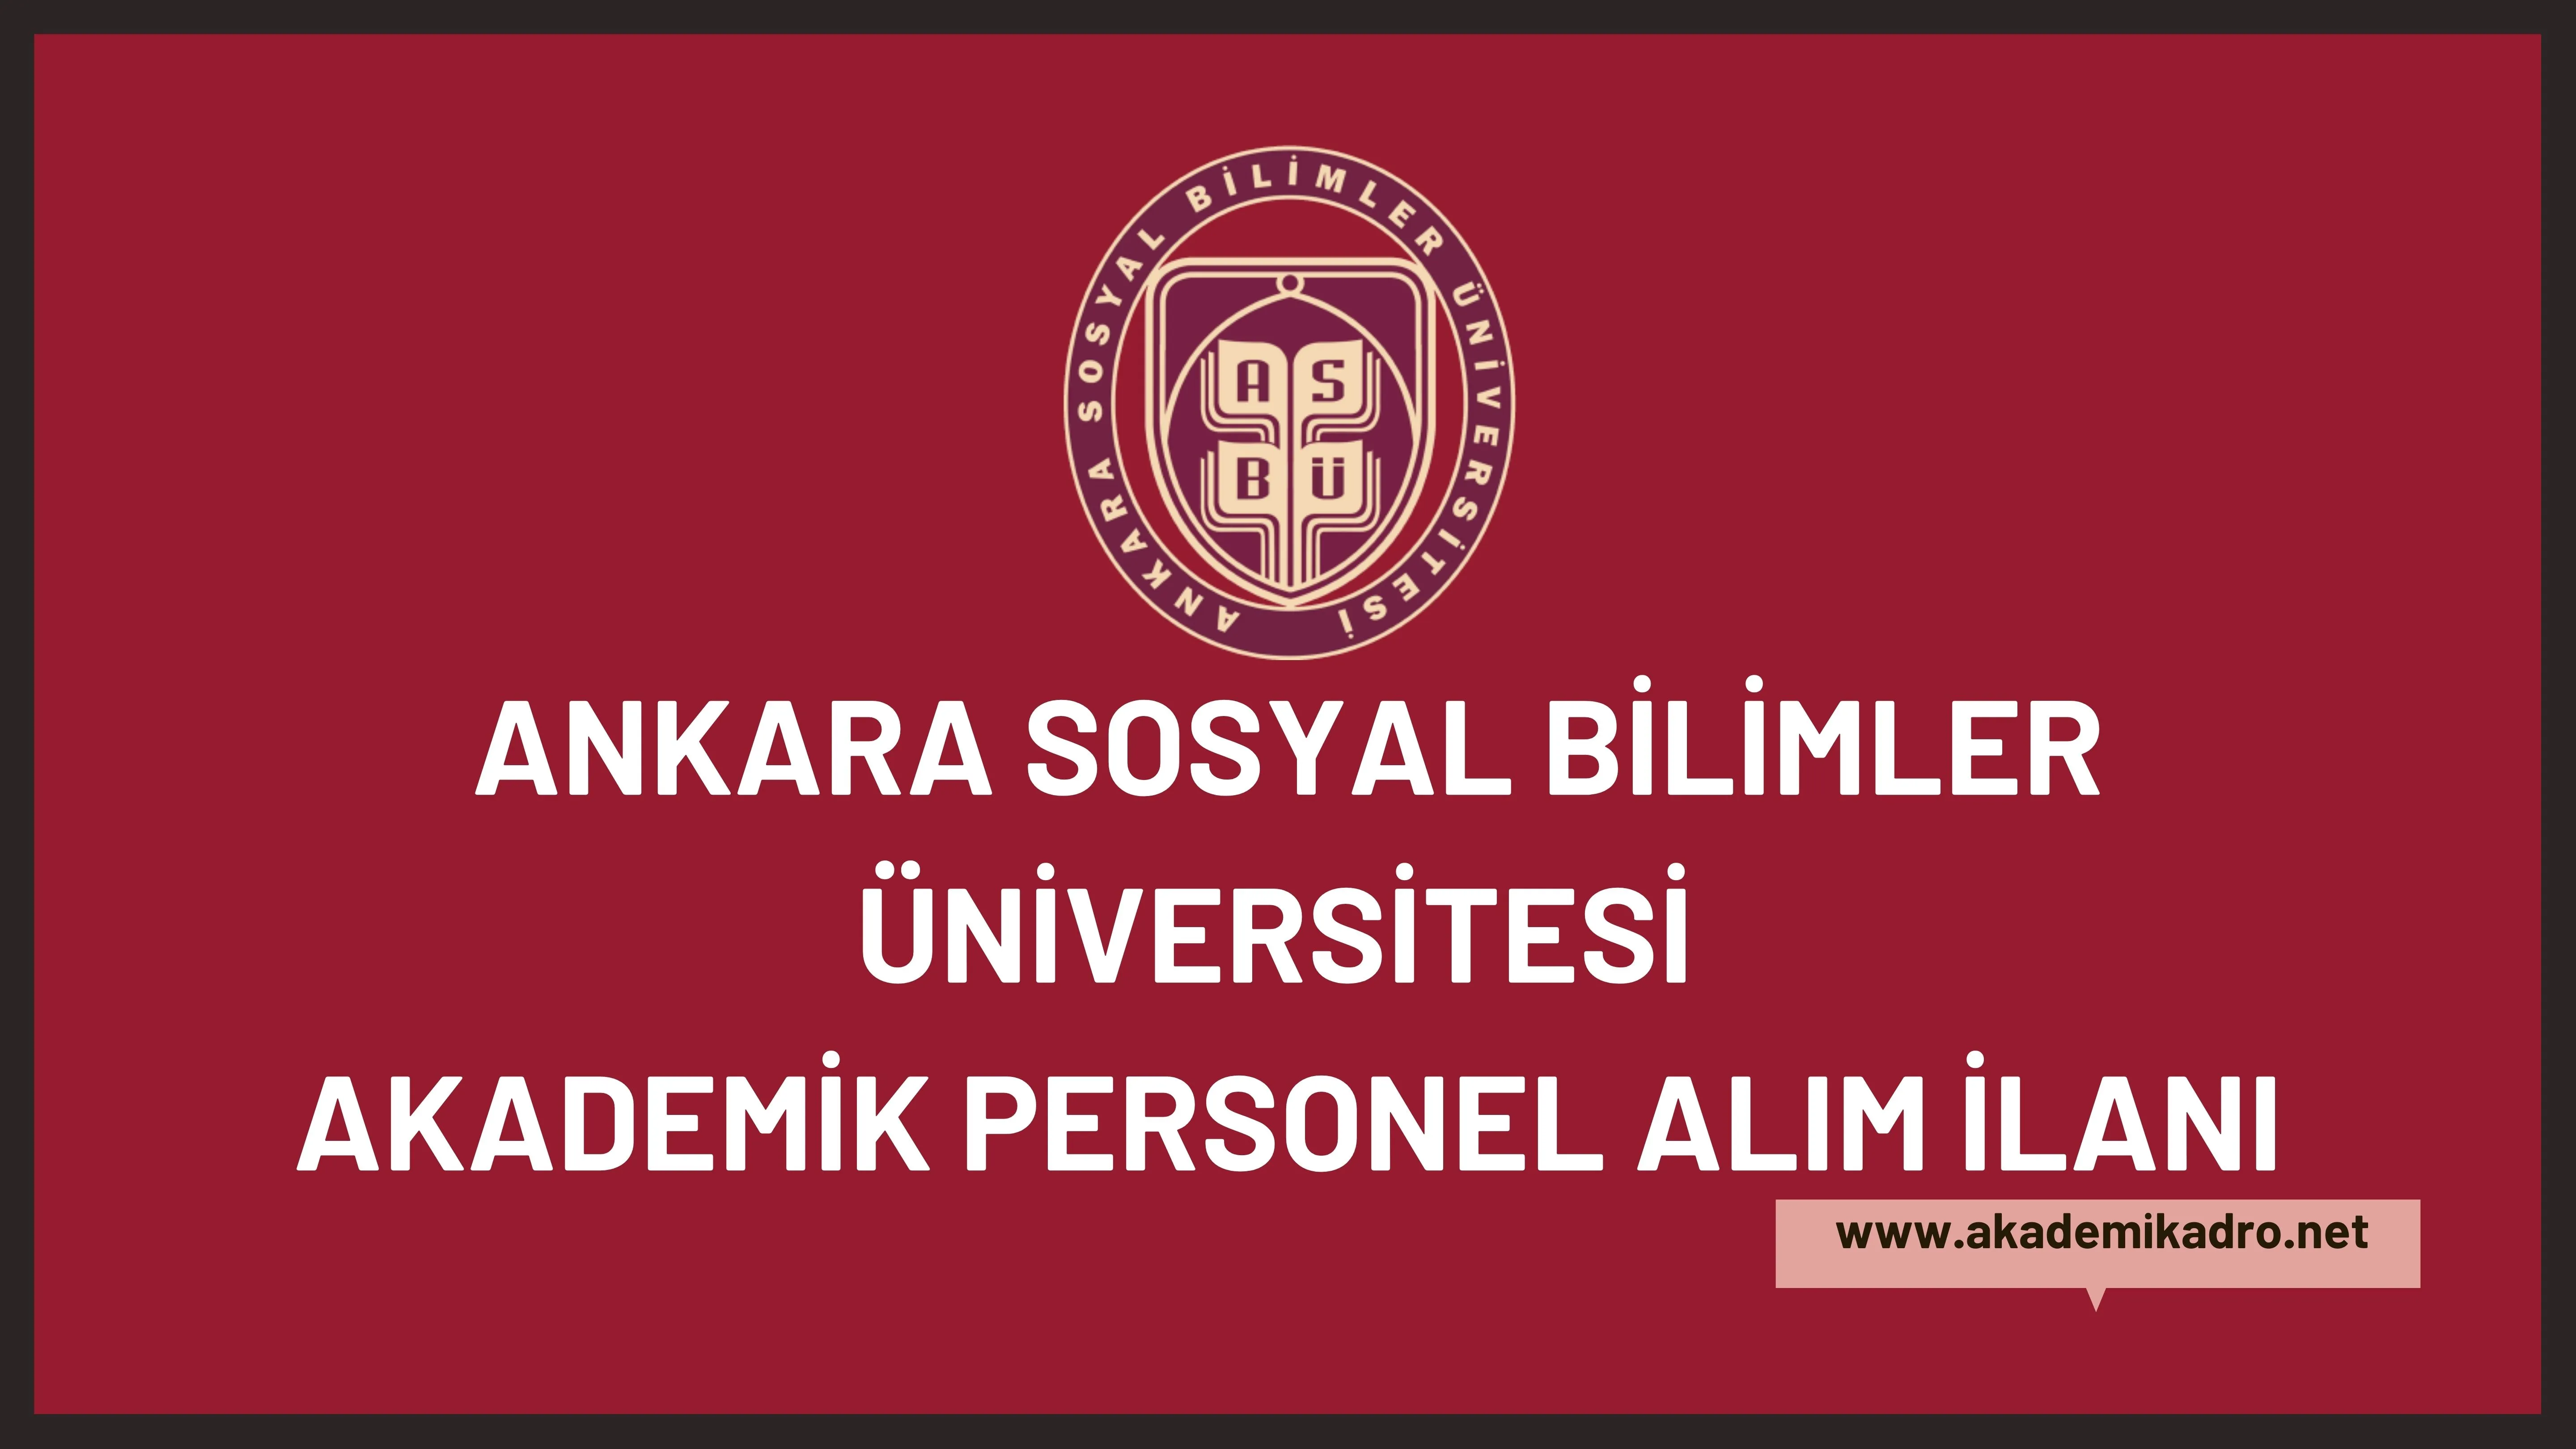 Ankara Sosyal Bilimler Üniversitesi 13 akademik personel alacak.